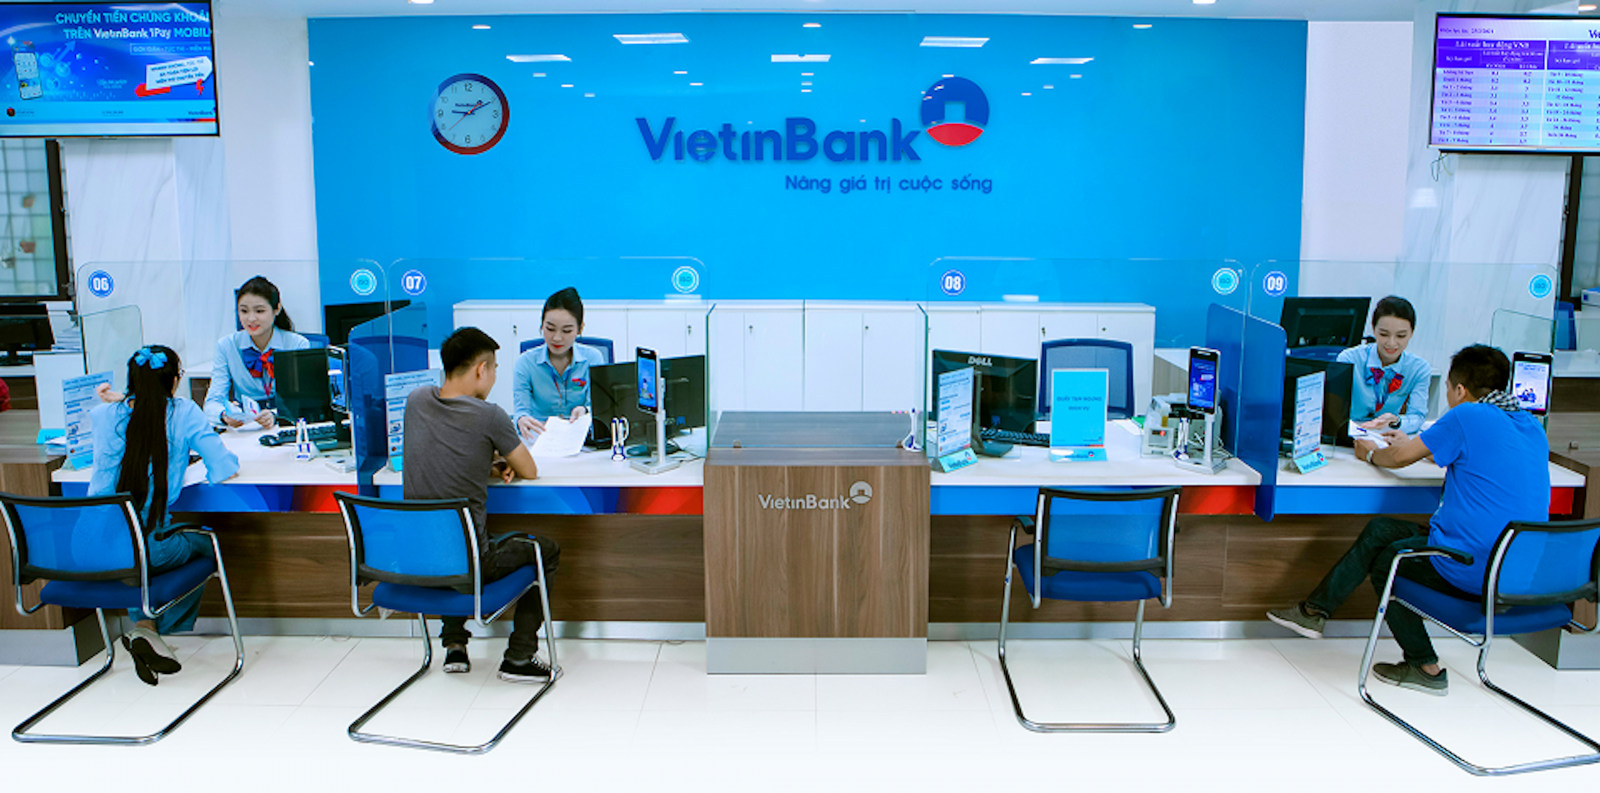 VietinBank đang không ngừng đa dạng sản phẩm, dịch vụ mang hàm lượng công nghệ cao nhằm thu hút người tiêu dùng.